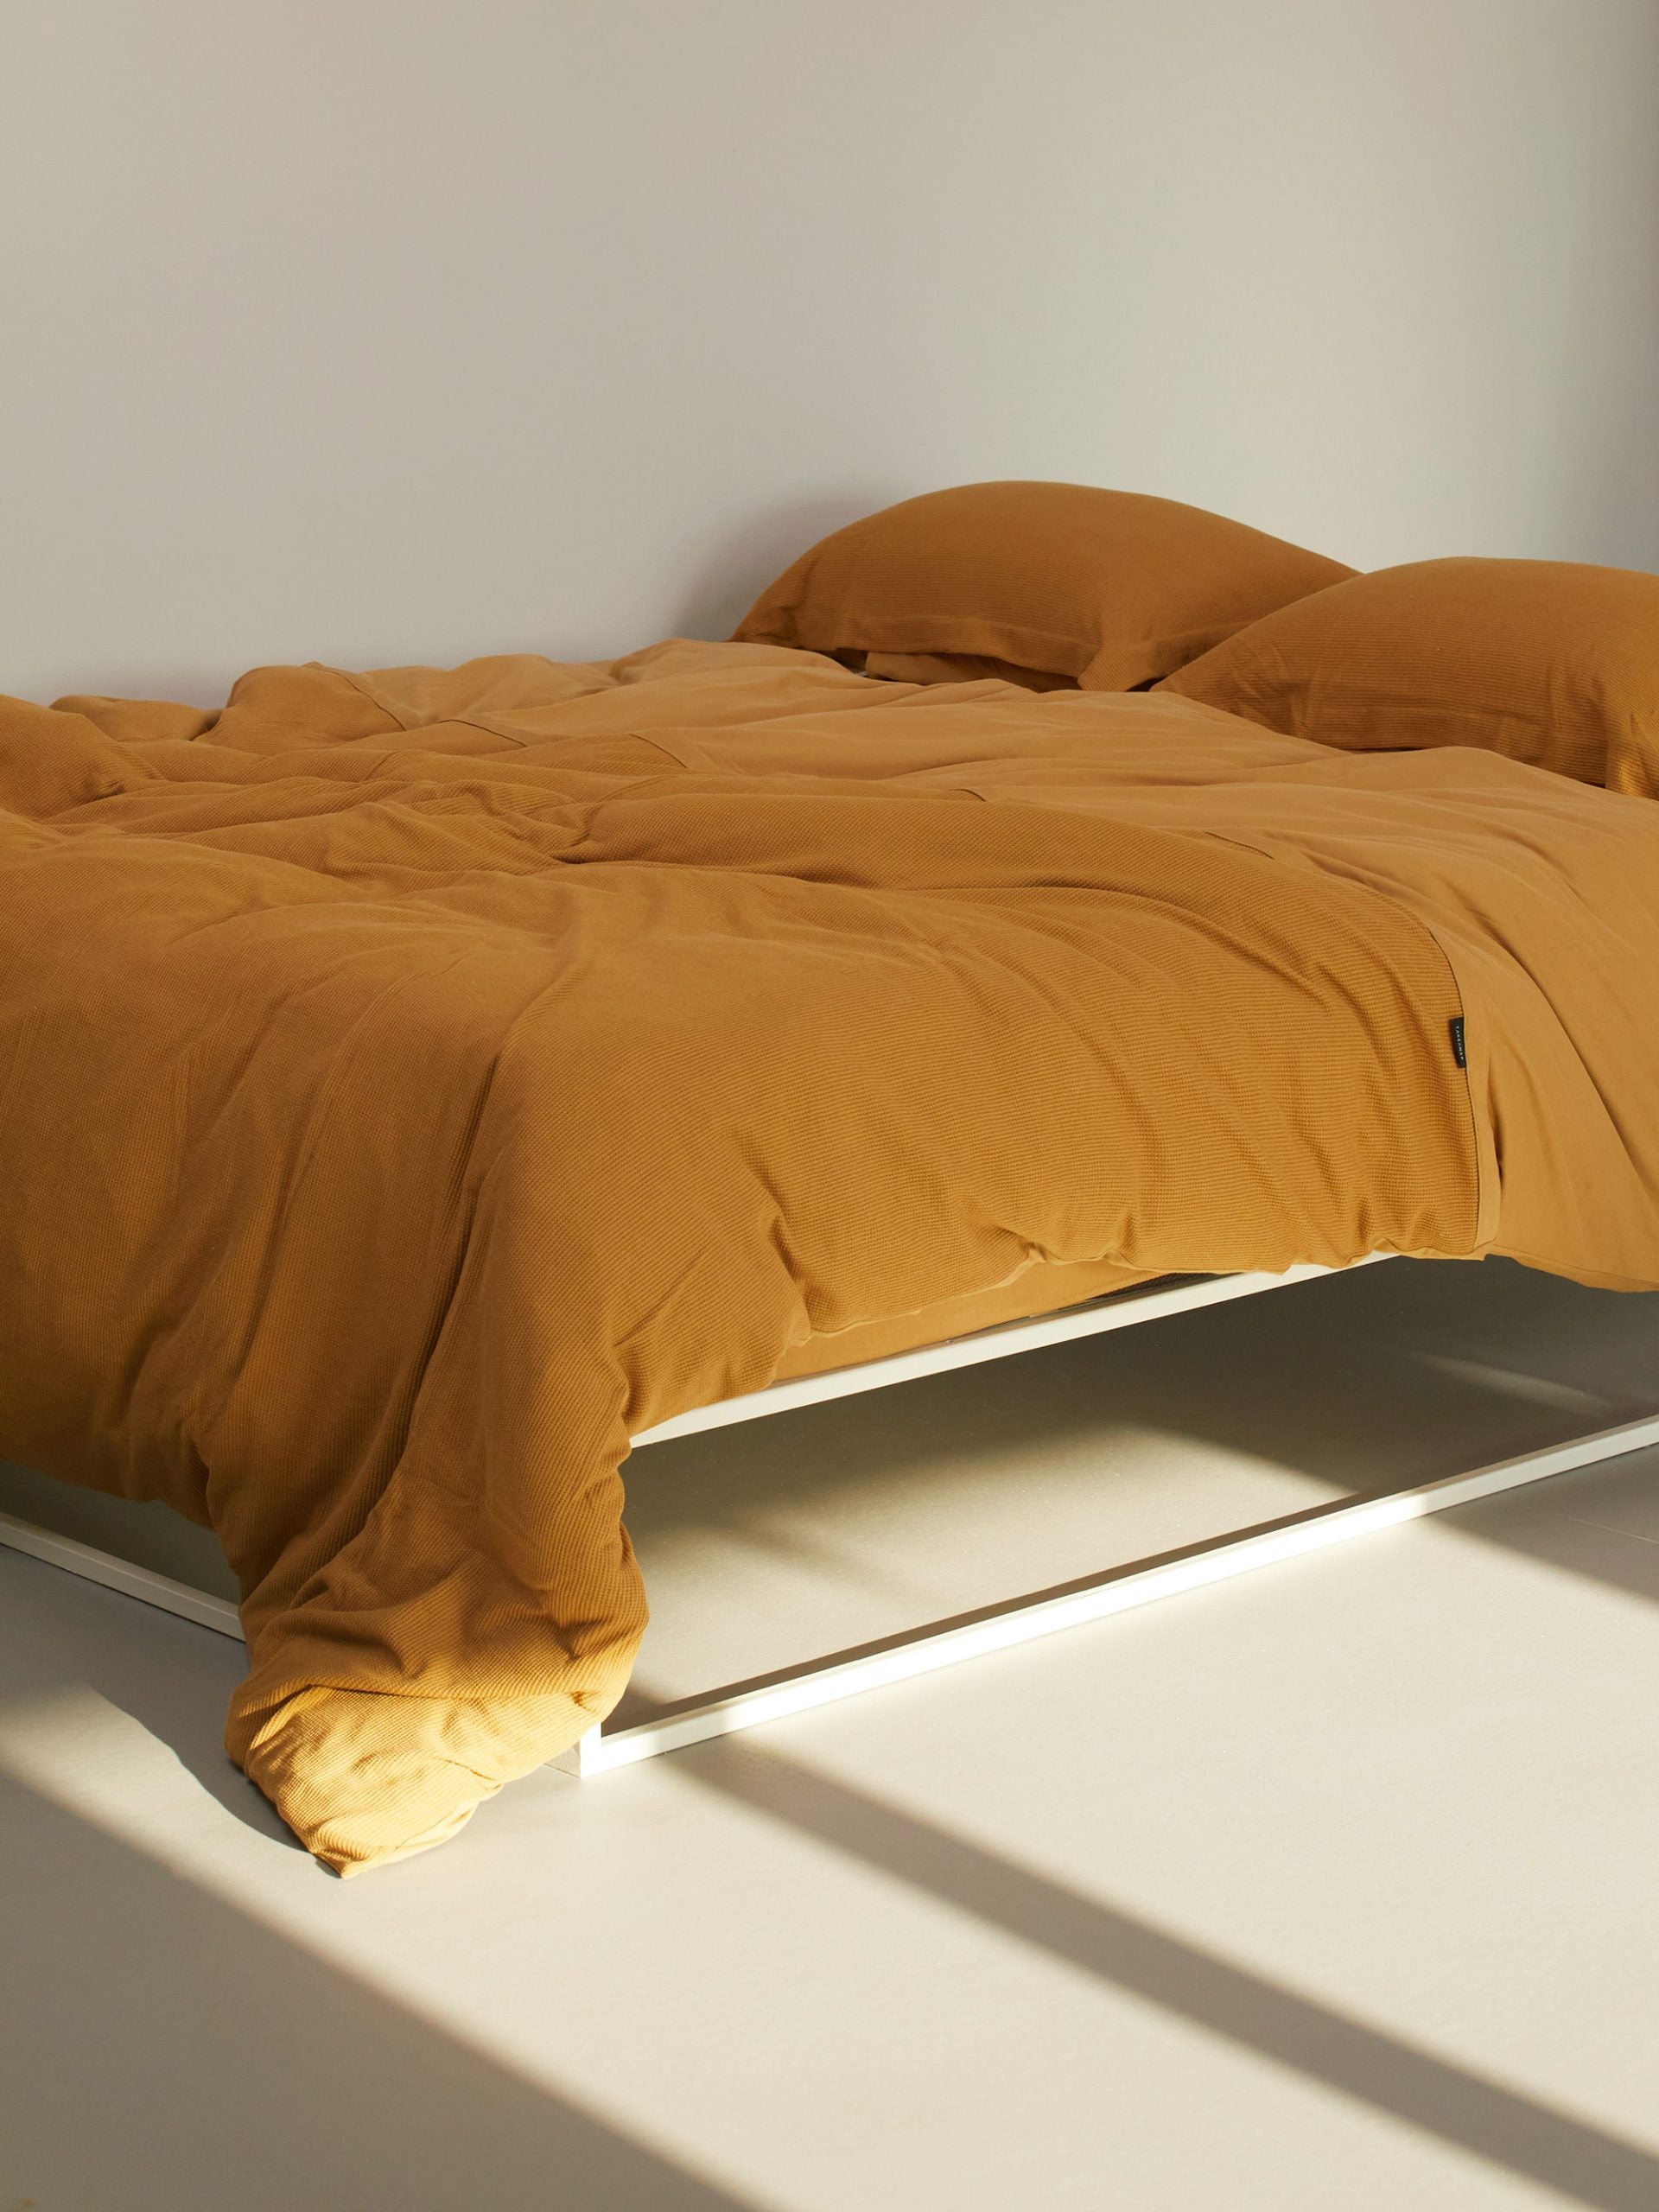 מיטת ברזל לבנה עם מצעים הכוללים סדין, שמיכת פוך עם ציפה לשמיכה כרית וציפית לכרית בצבע קרמל